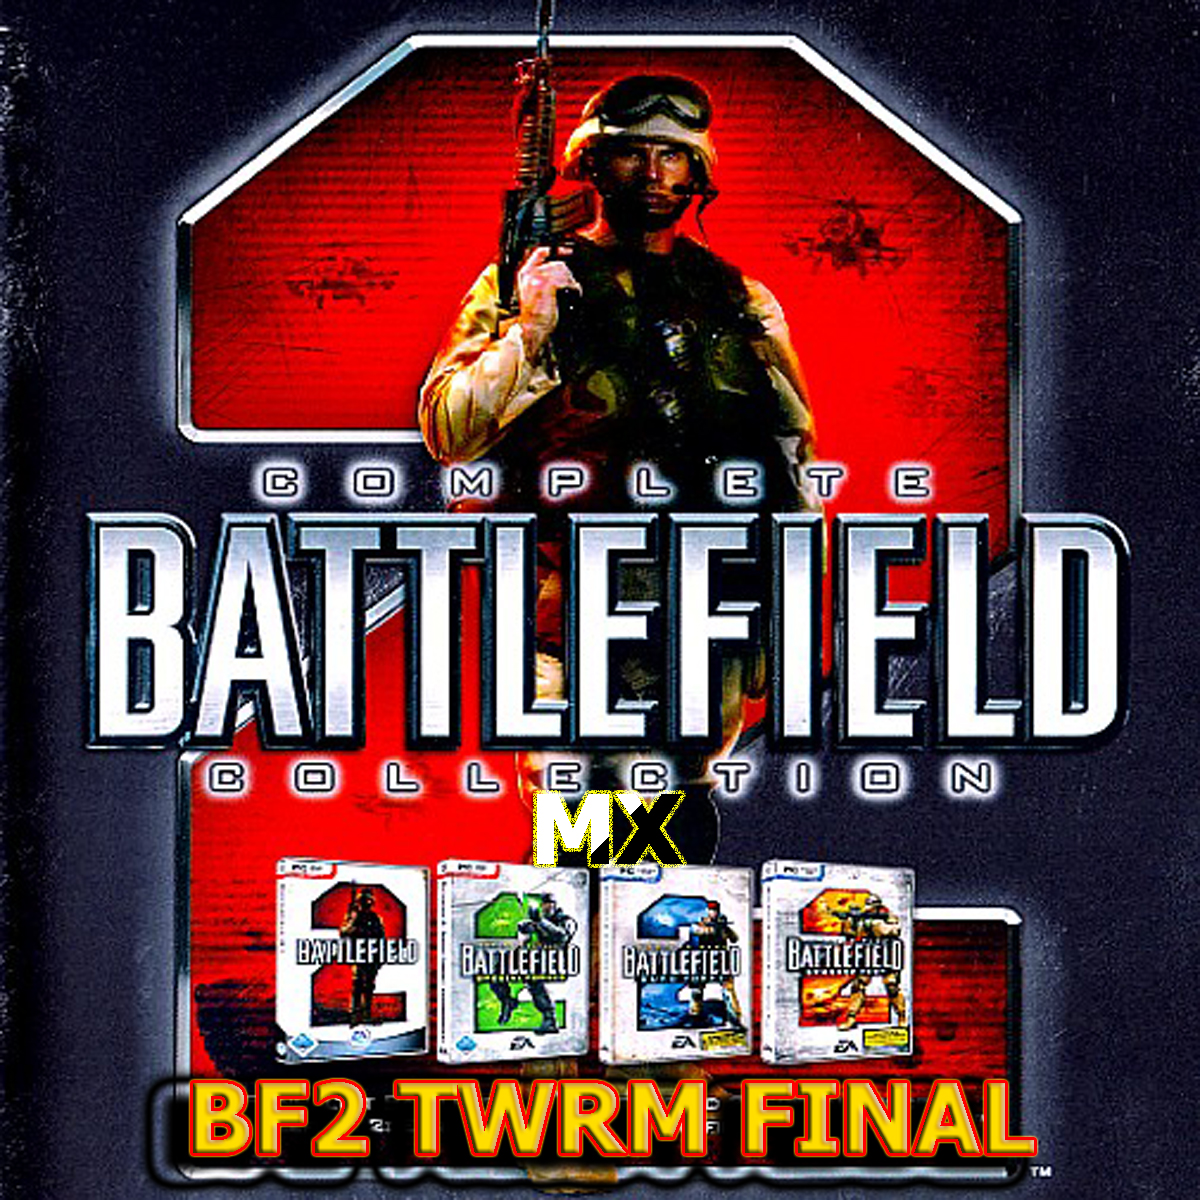 Battlefield 4, Gamefont